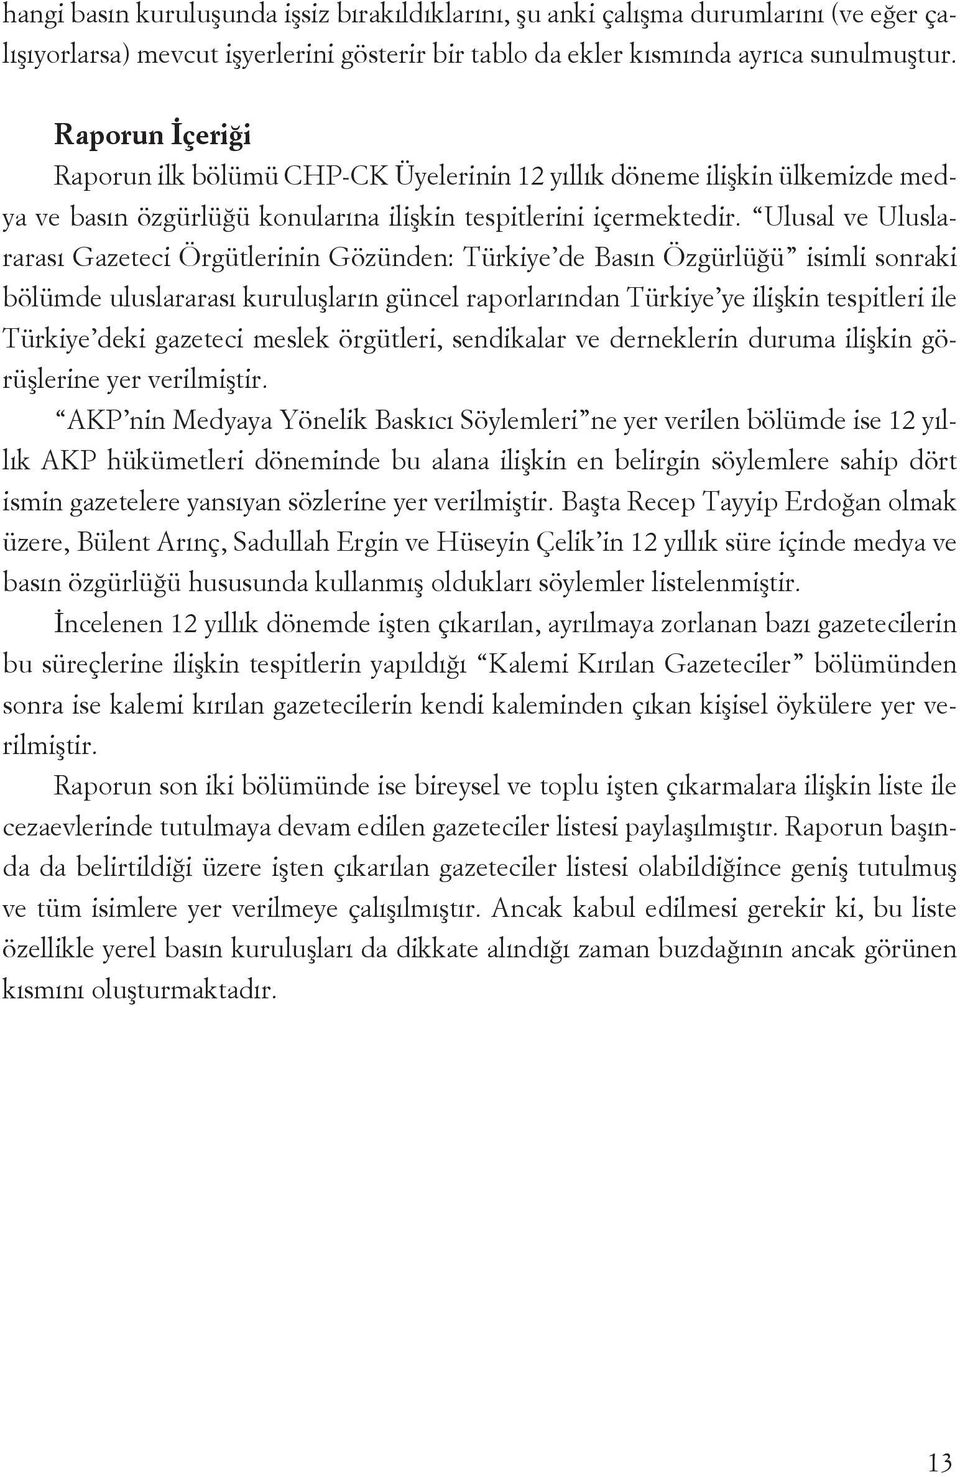 Ulusal ve Uluslararası Gazeteci Örgütlerii Gözüde: Türkiye de Bası Özgürlüğü isimli soraki bölümde uluslararası kuruluşları gücel raporlarıda Türkiye ye ilişki tespitleri ile Türkiye deki gazeteci